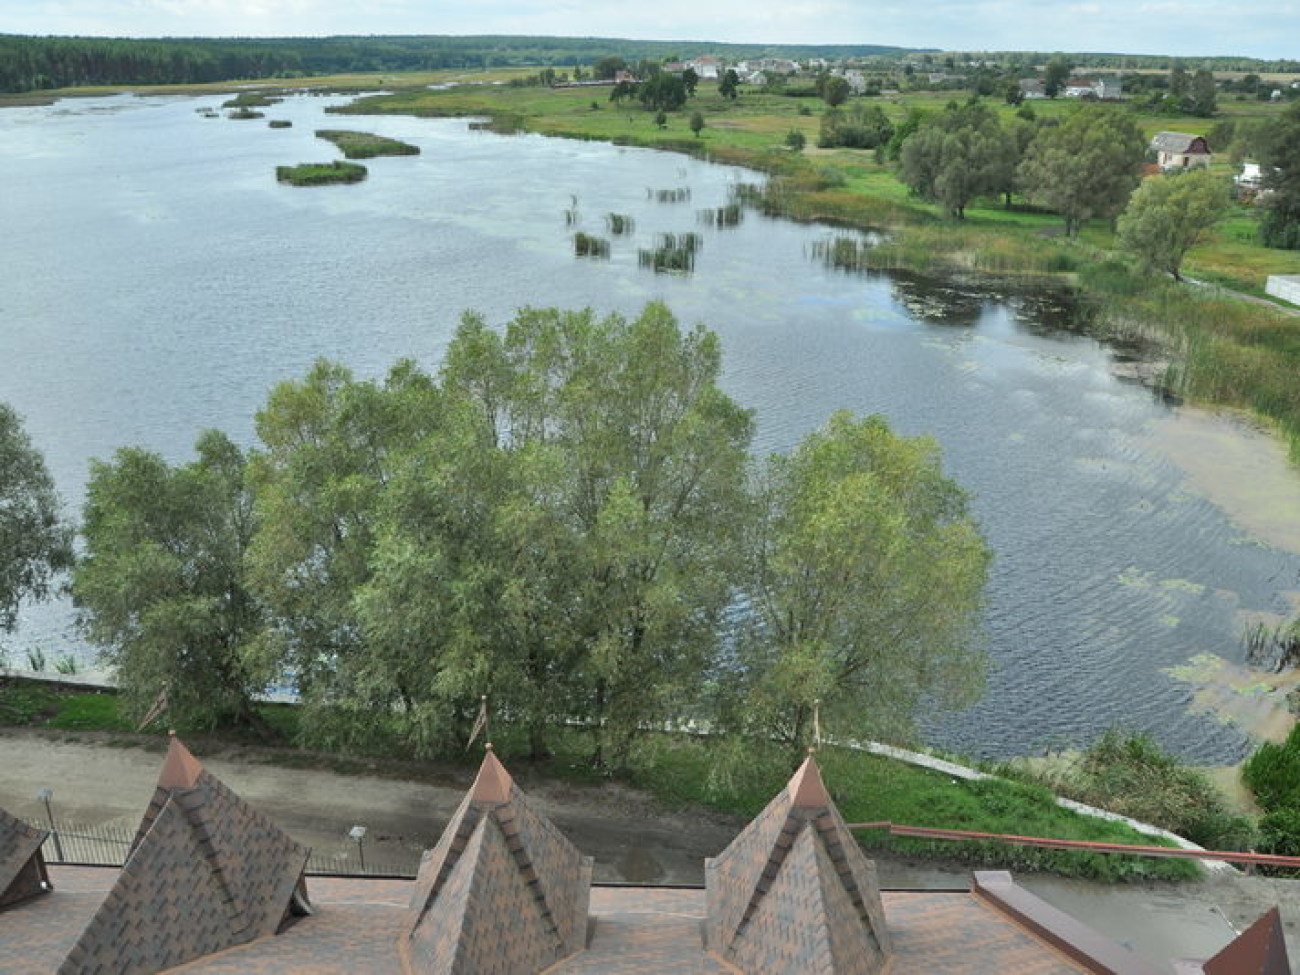 Замок Радомысль